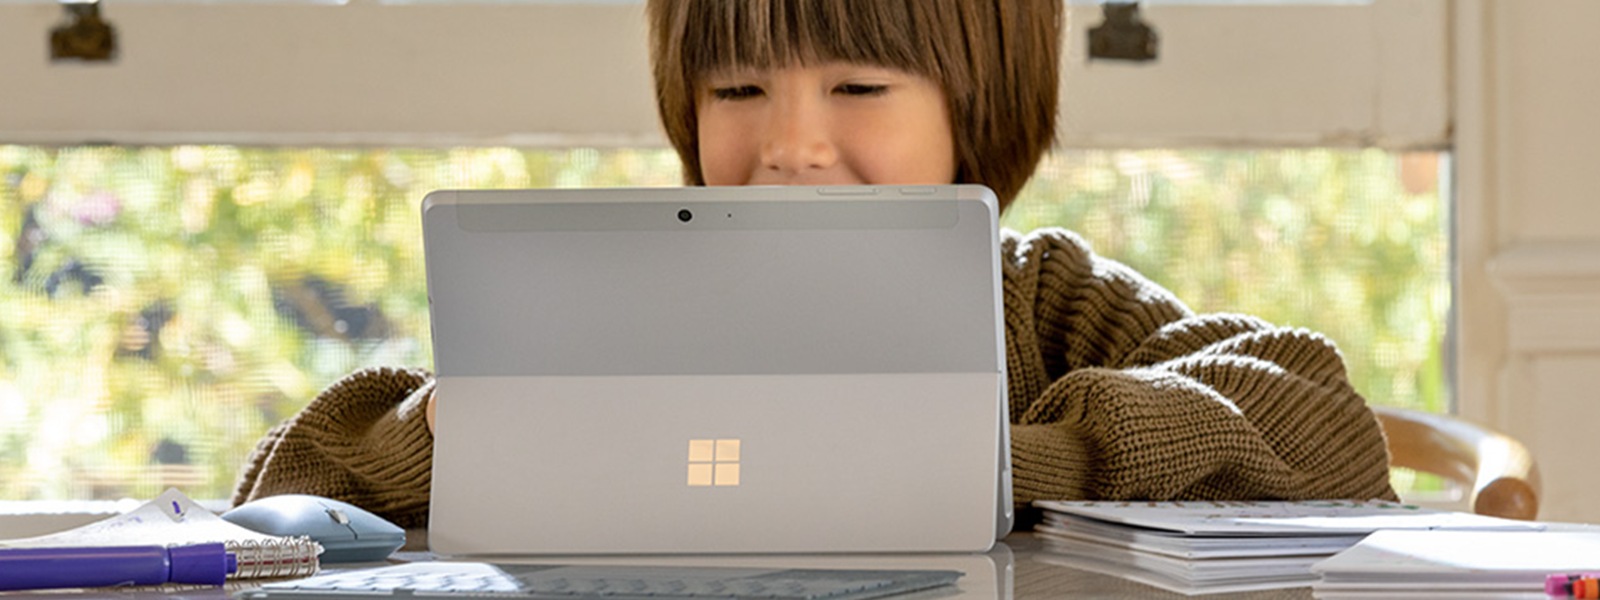 Ребенок, работающий на Surface Go 2 дома с крышкой типа Ice Blue Surface и ручкой Surface